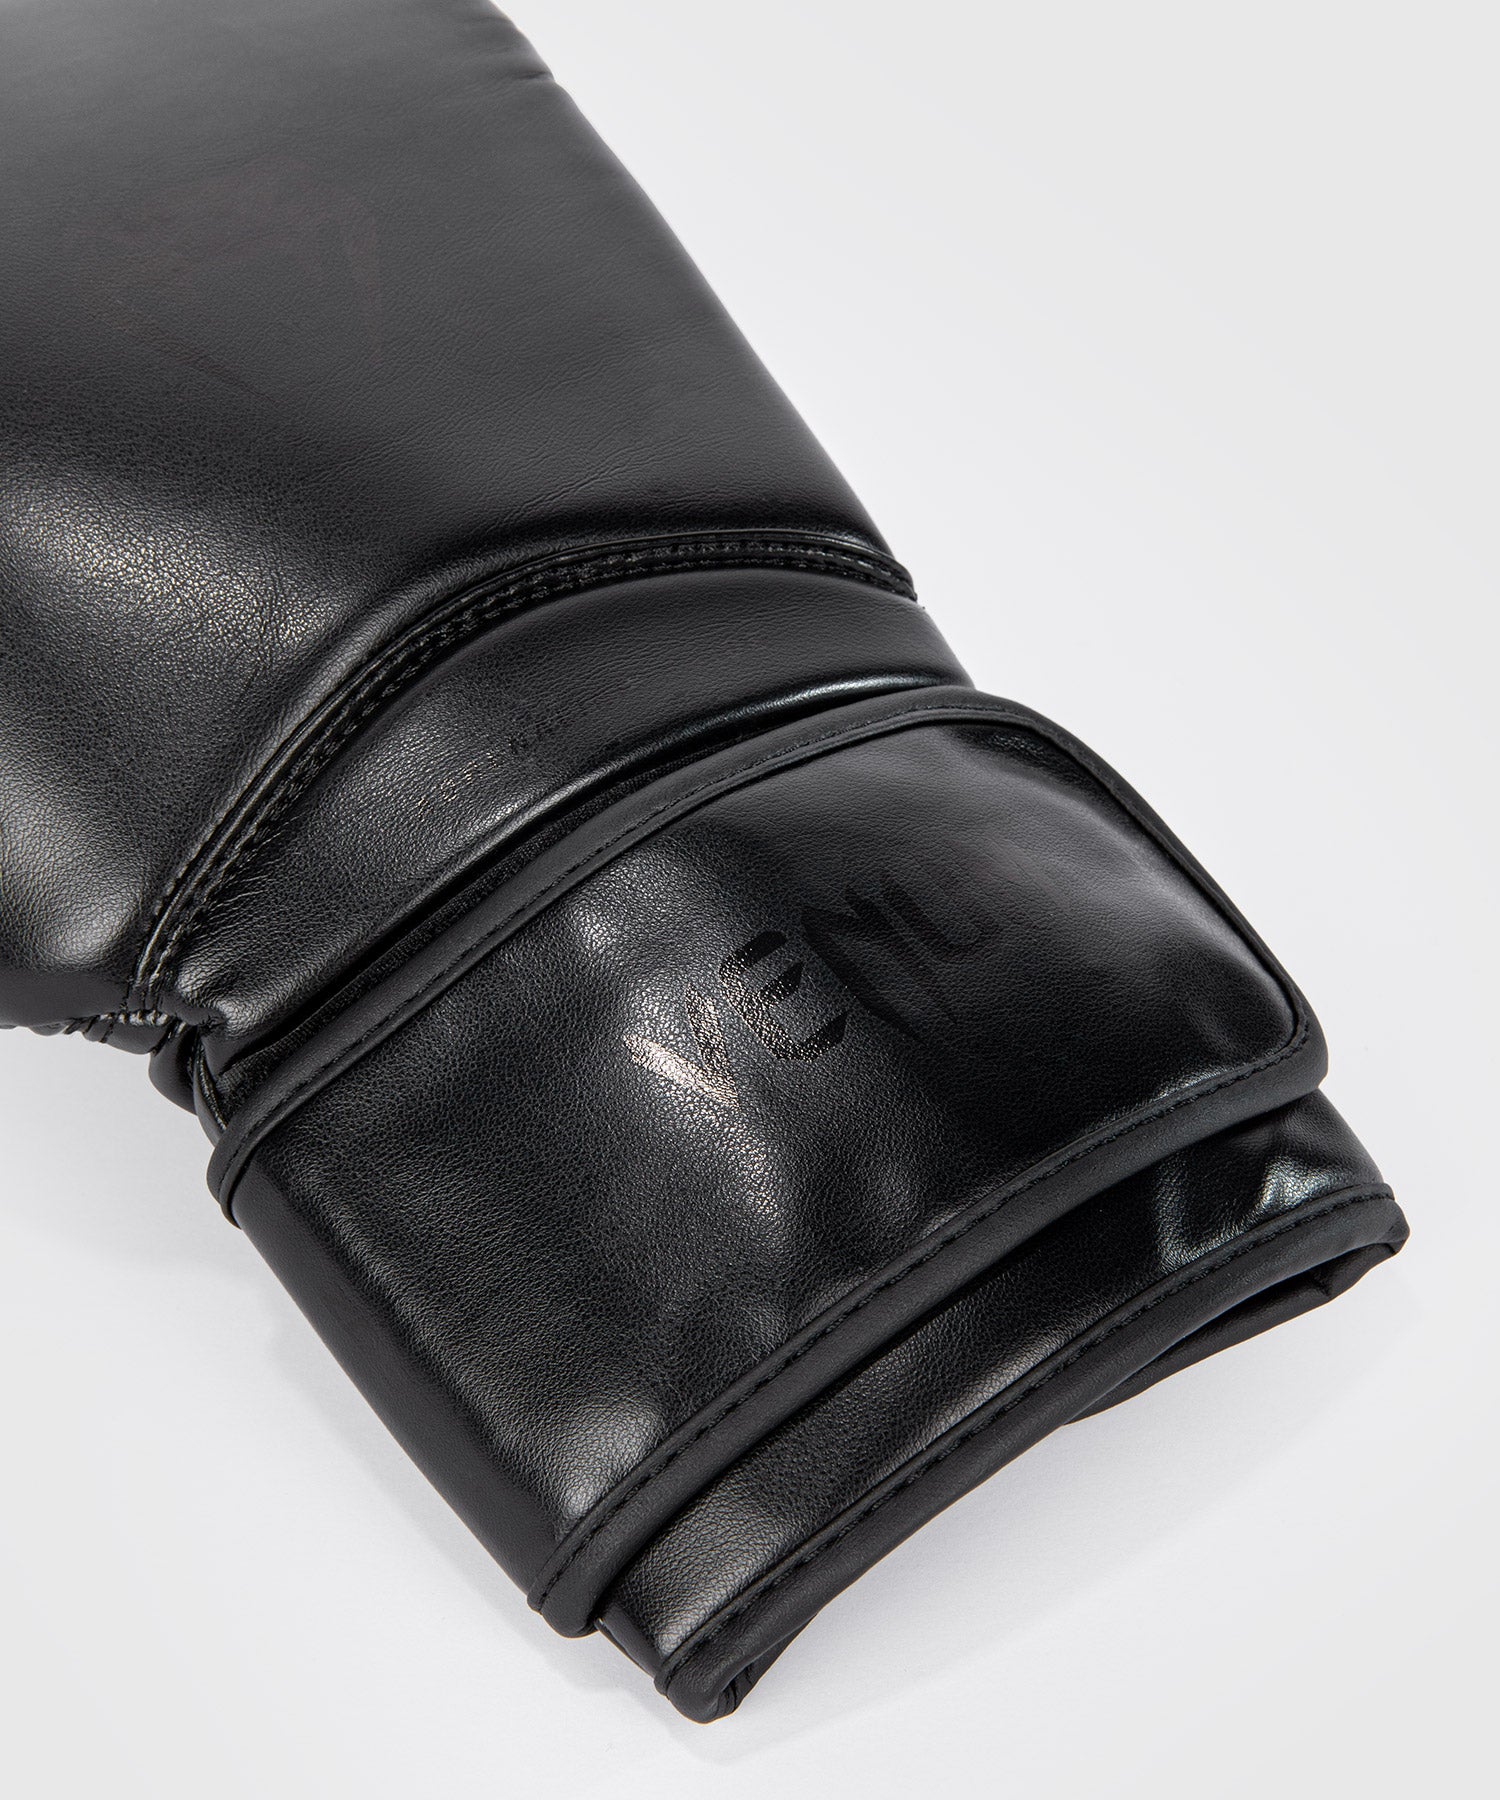 Venum Contender 1.5 Boxing Gloves - Black/Black - Venum